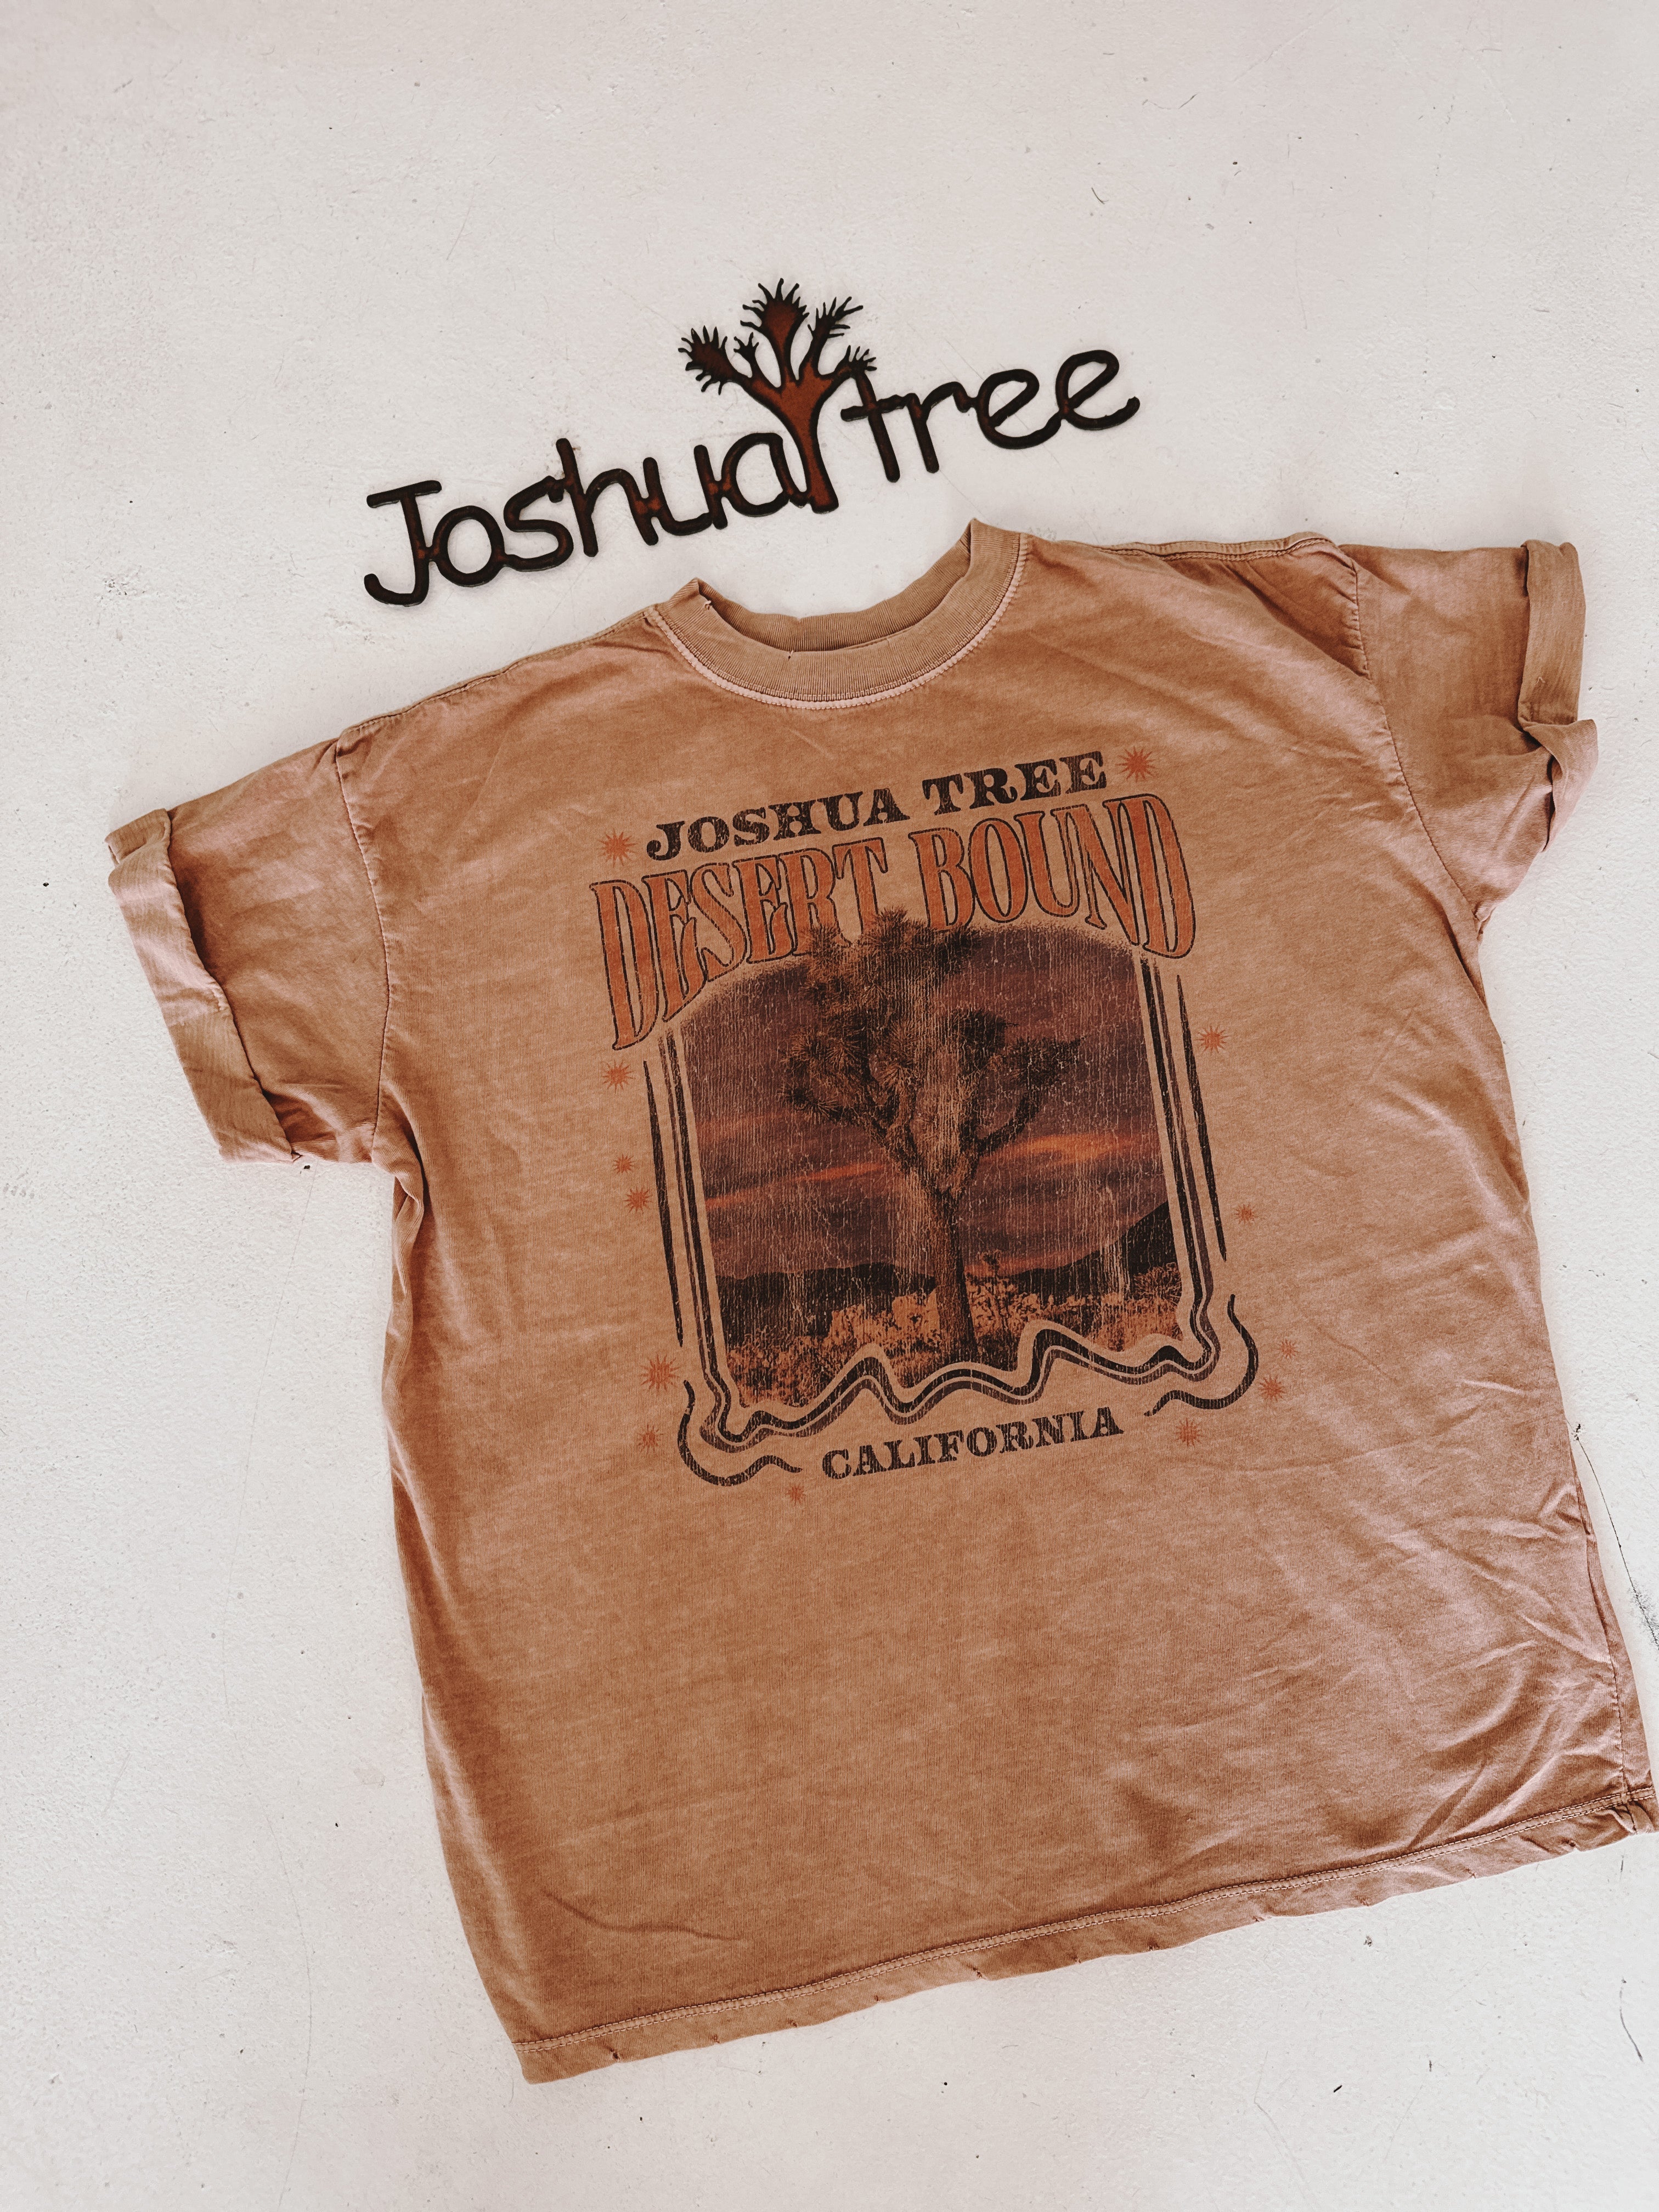 Joshua Tree Tour Shirt - Roaming Travelers Joshua Tree, California